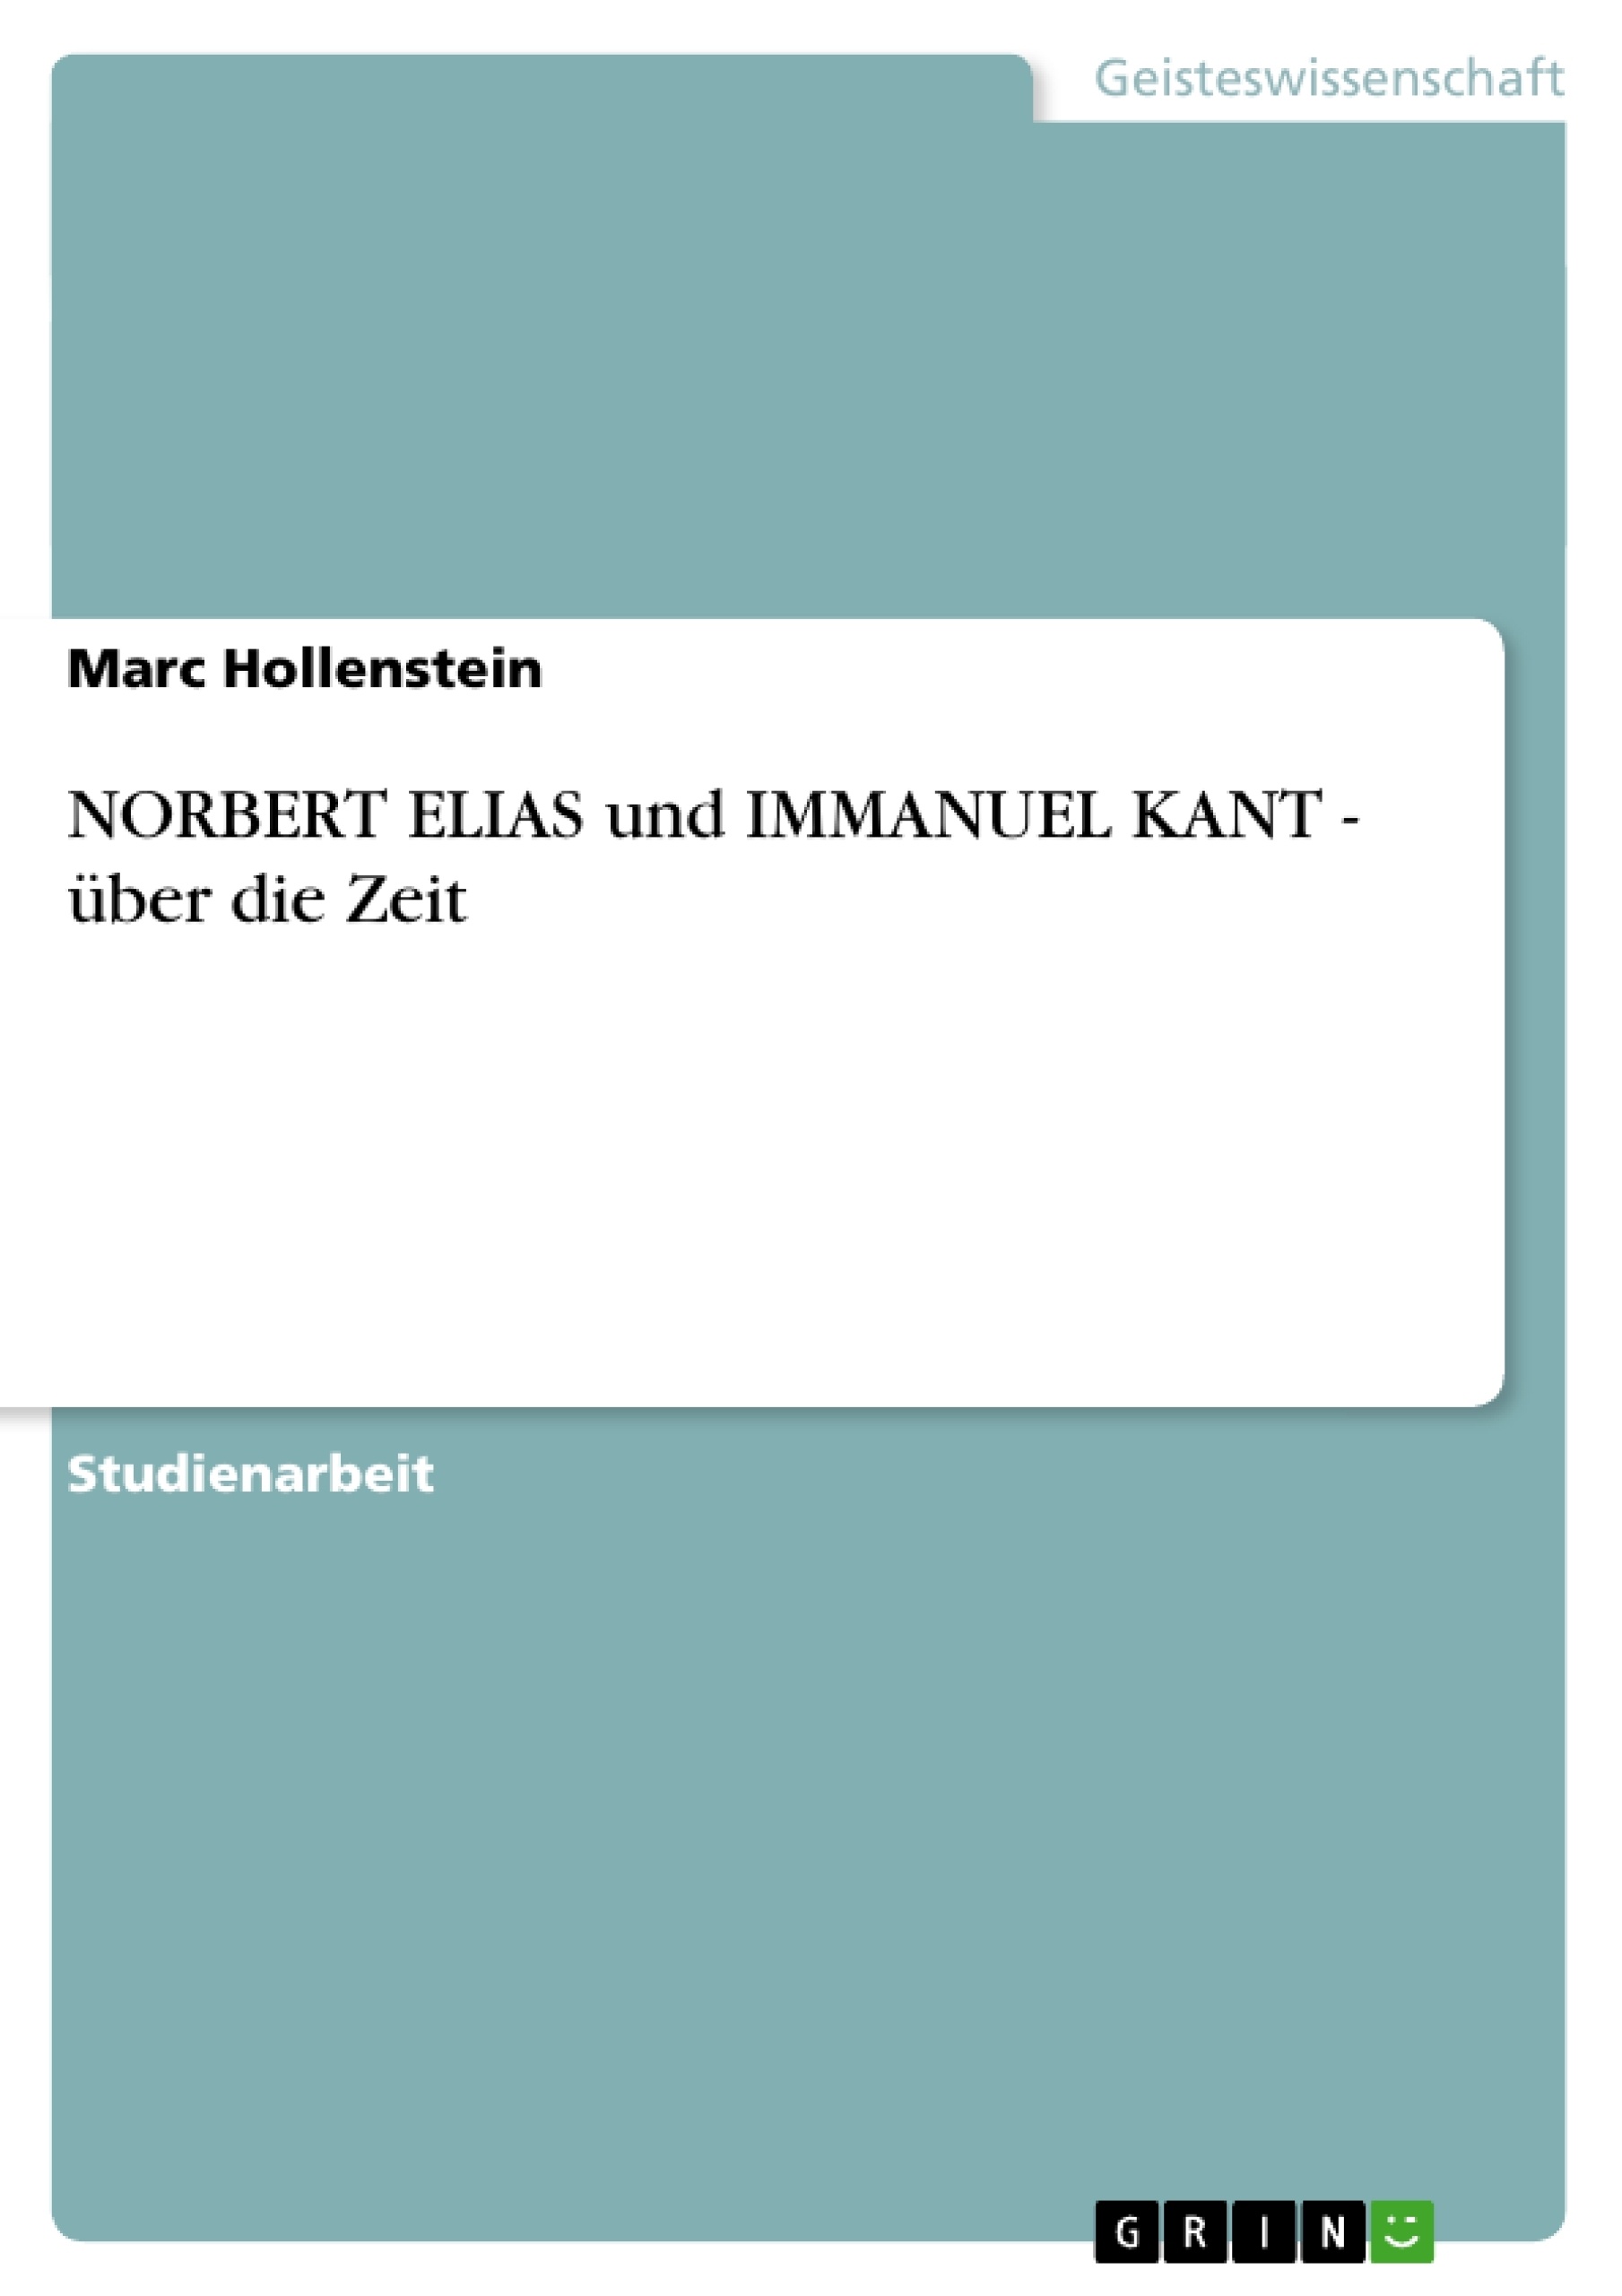 Titre: NORBERT ELIAS und IMMANUEL KANT - über die Zeit